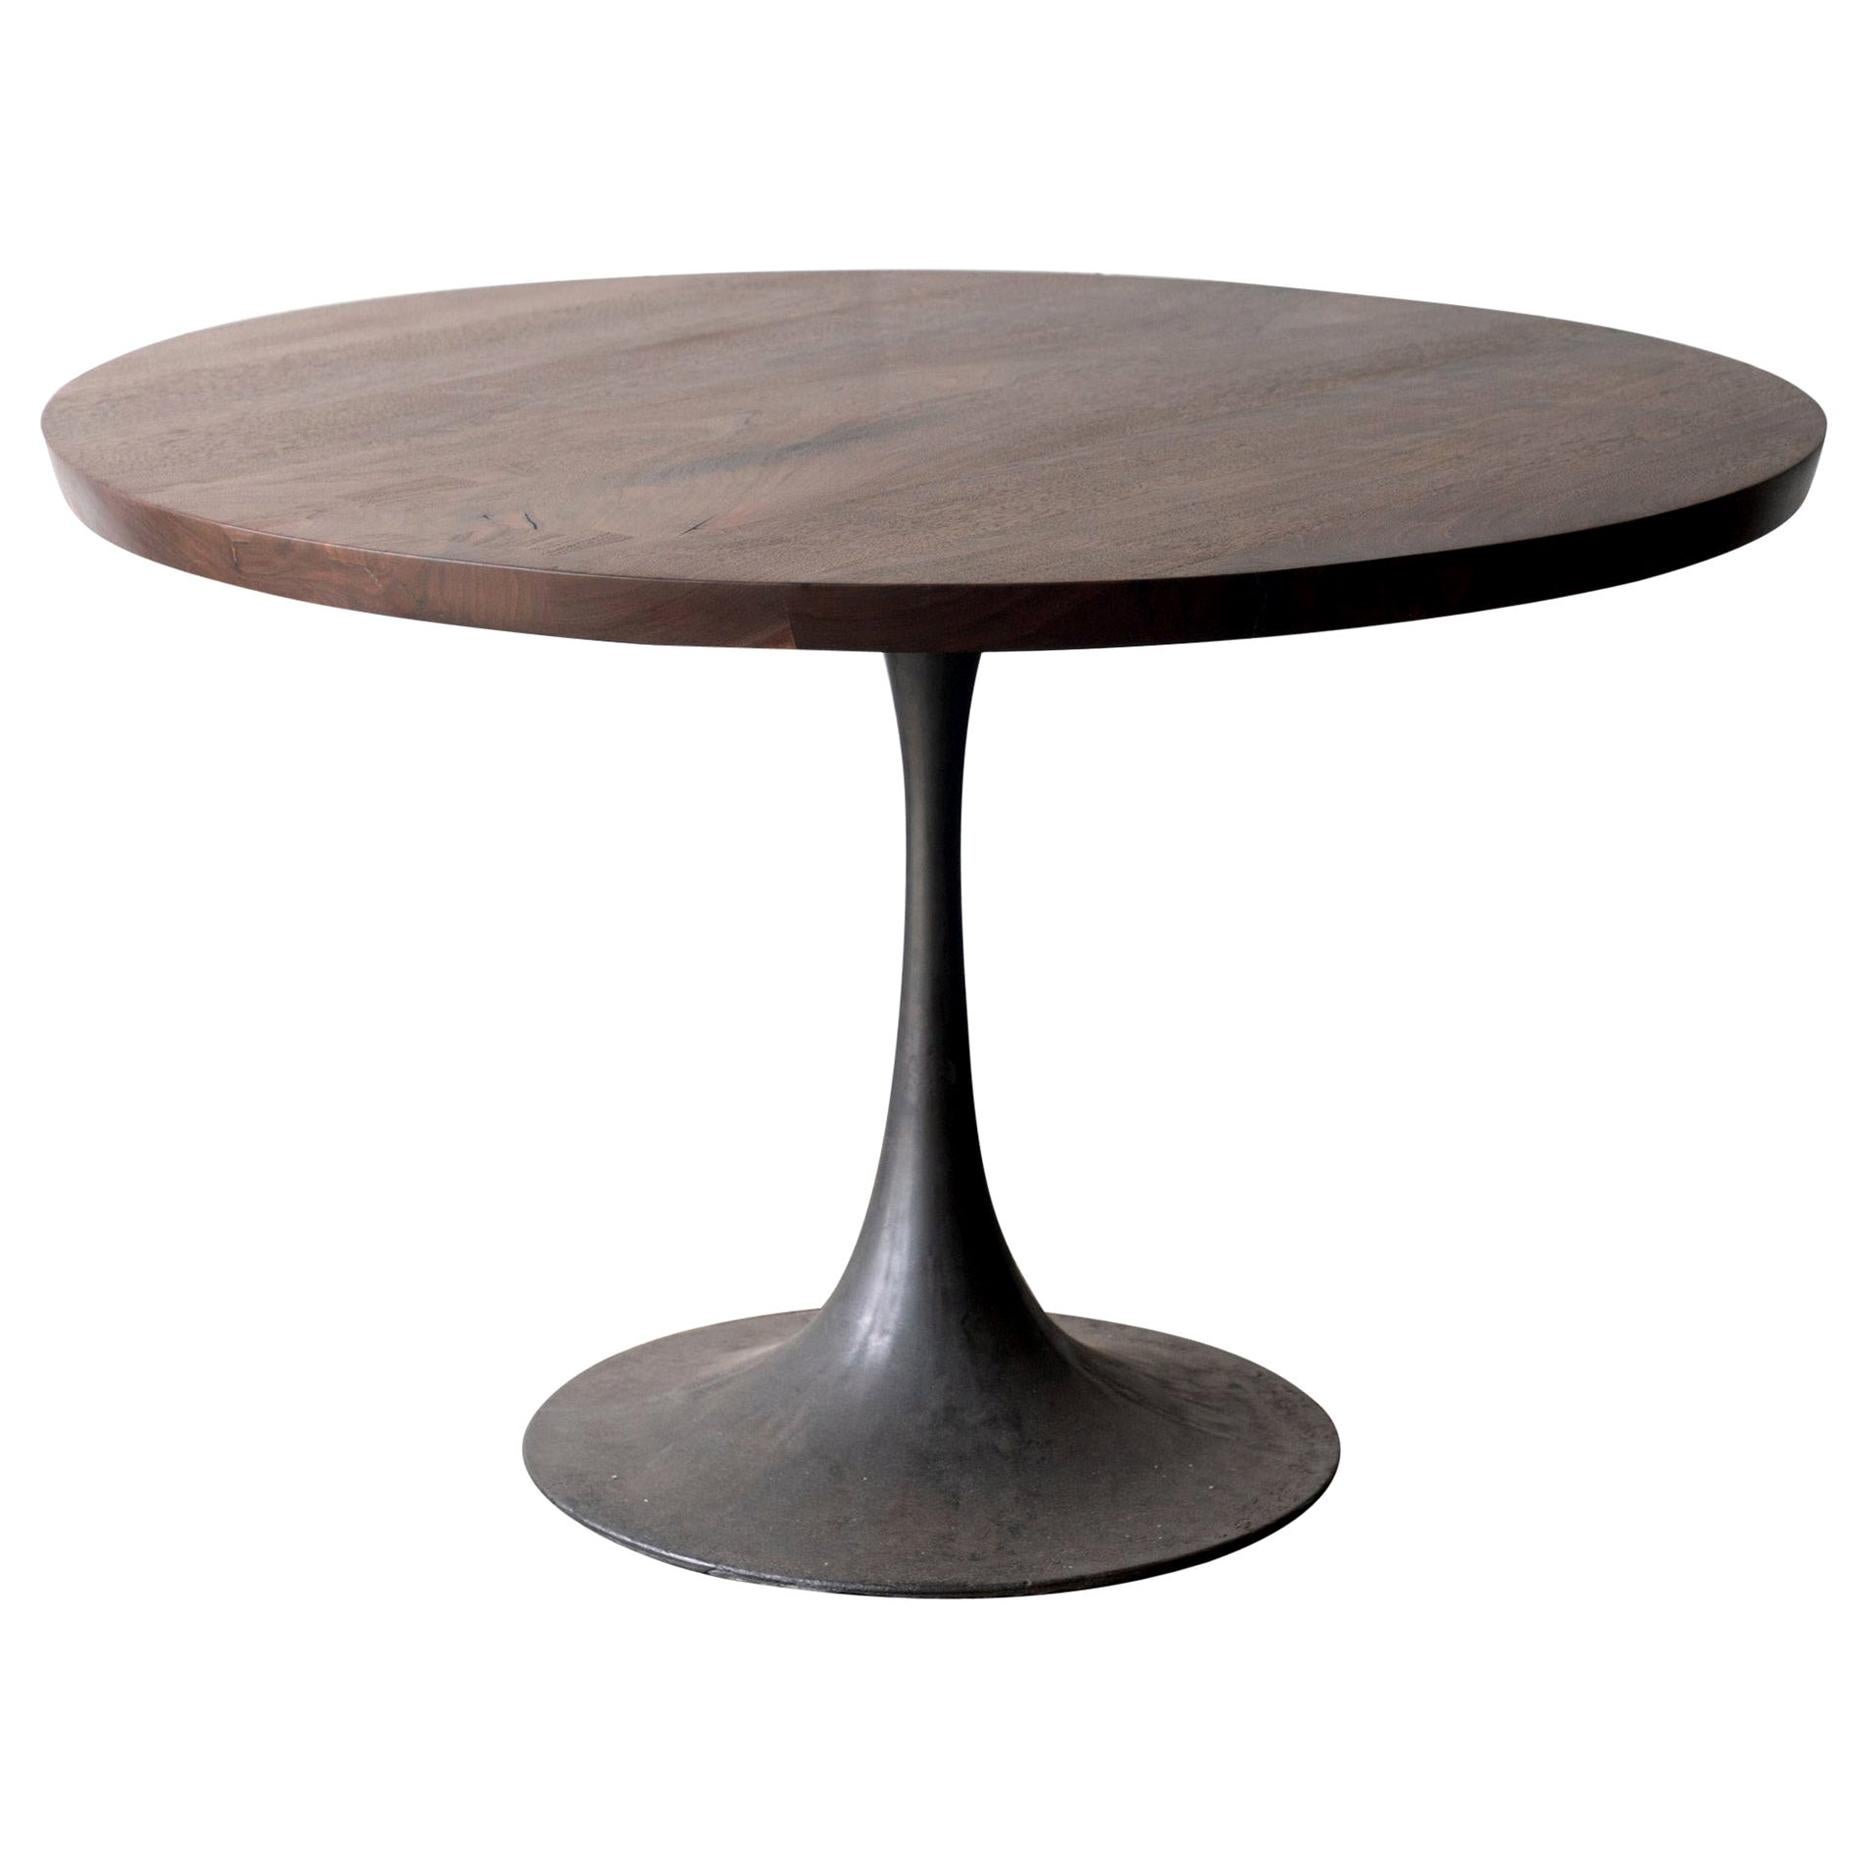 Round Pedestal Base Dining Table Solid Walnut Wood Cast Iron Amicalola Base